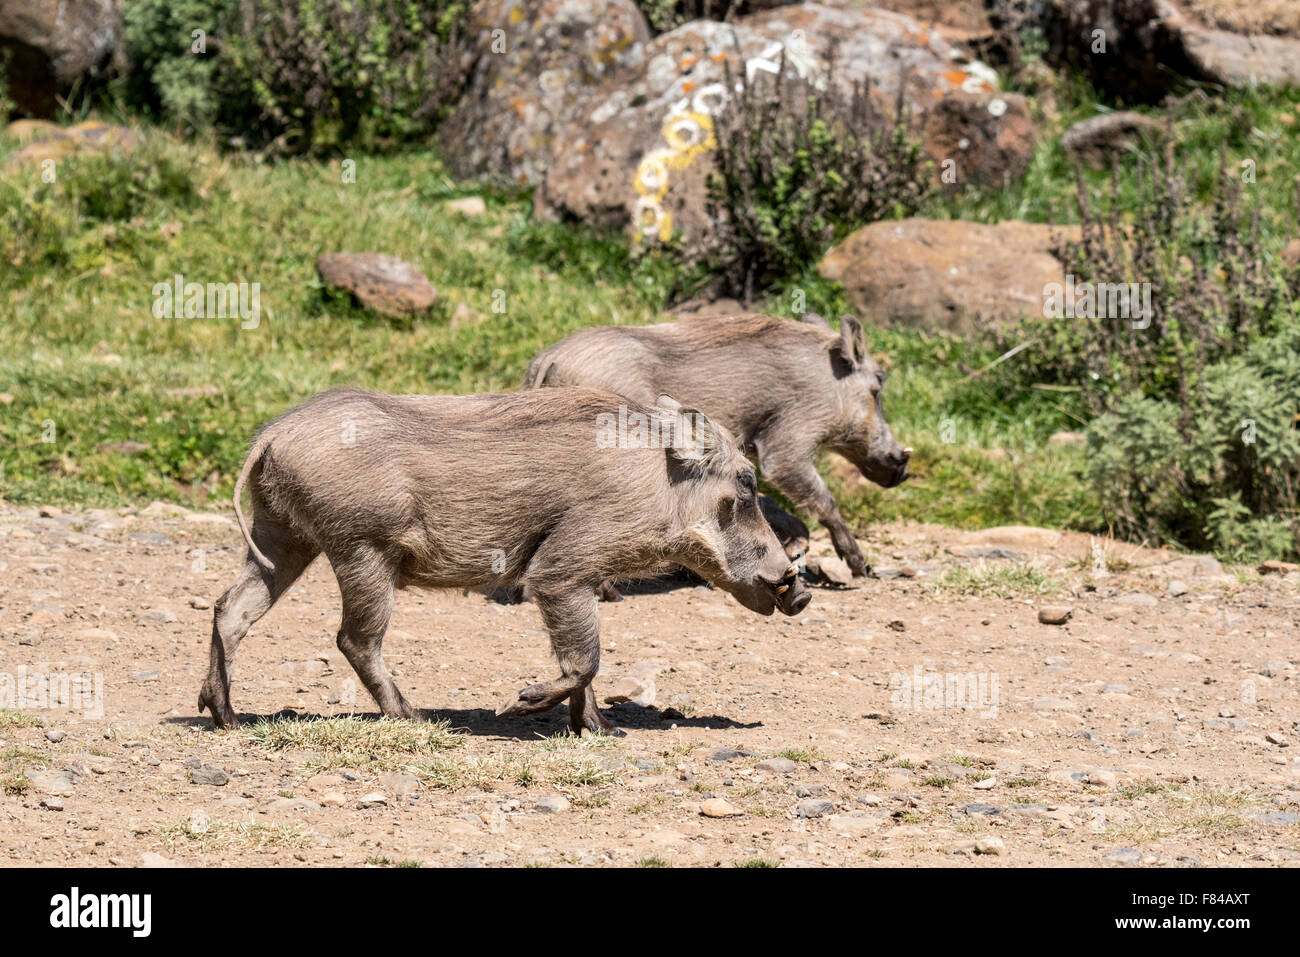 Two common Warthogs walking in Ethiopia Stock Photo